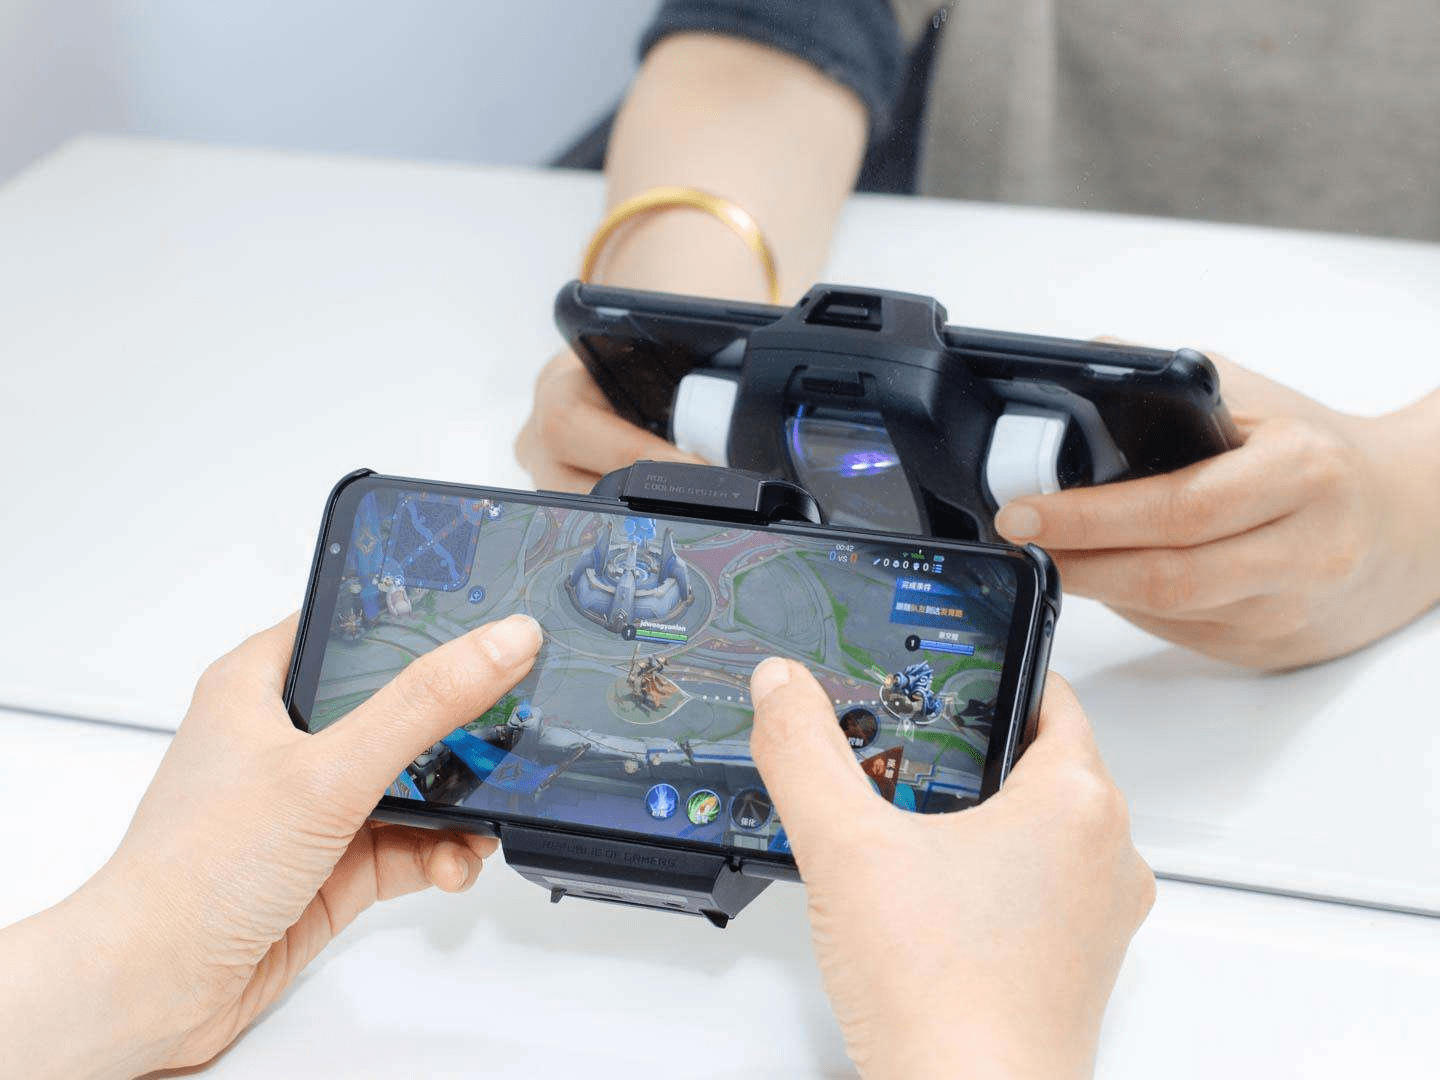 MiniMax – Công ty game khởi nghiệp nhận đầu tư khủng từ Tencent, miHoYo